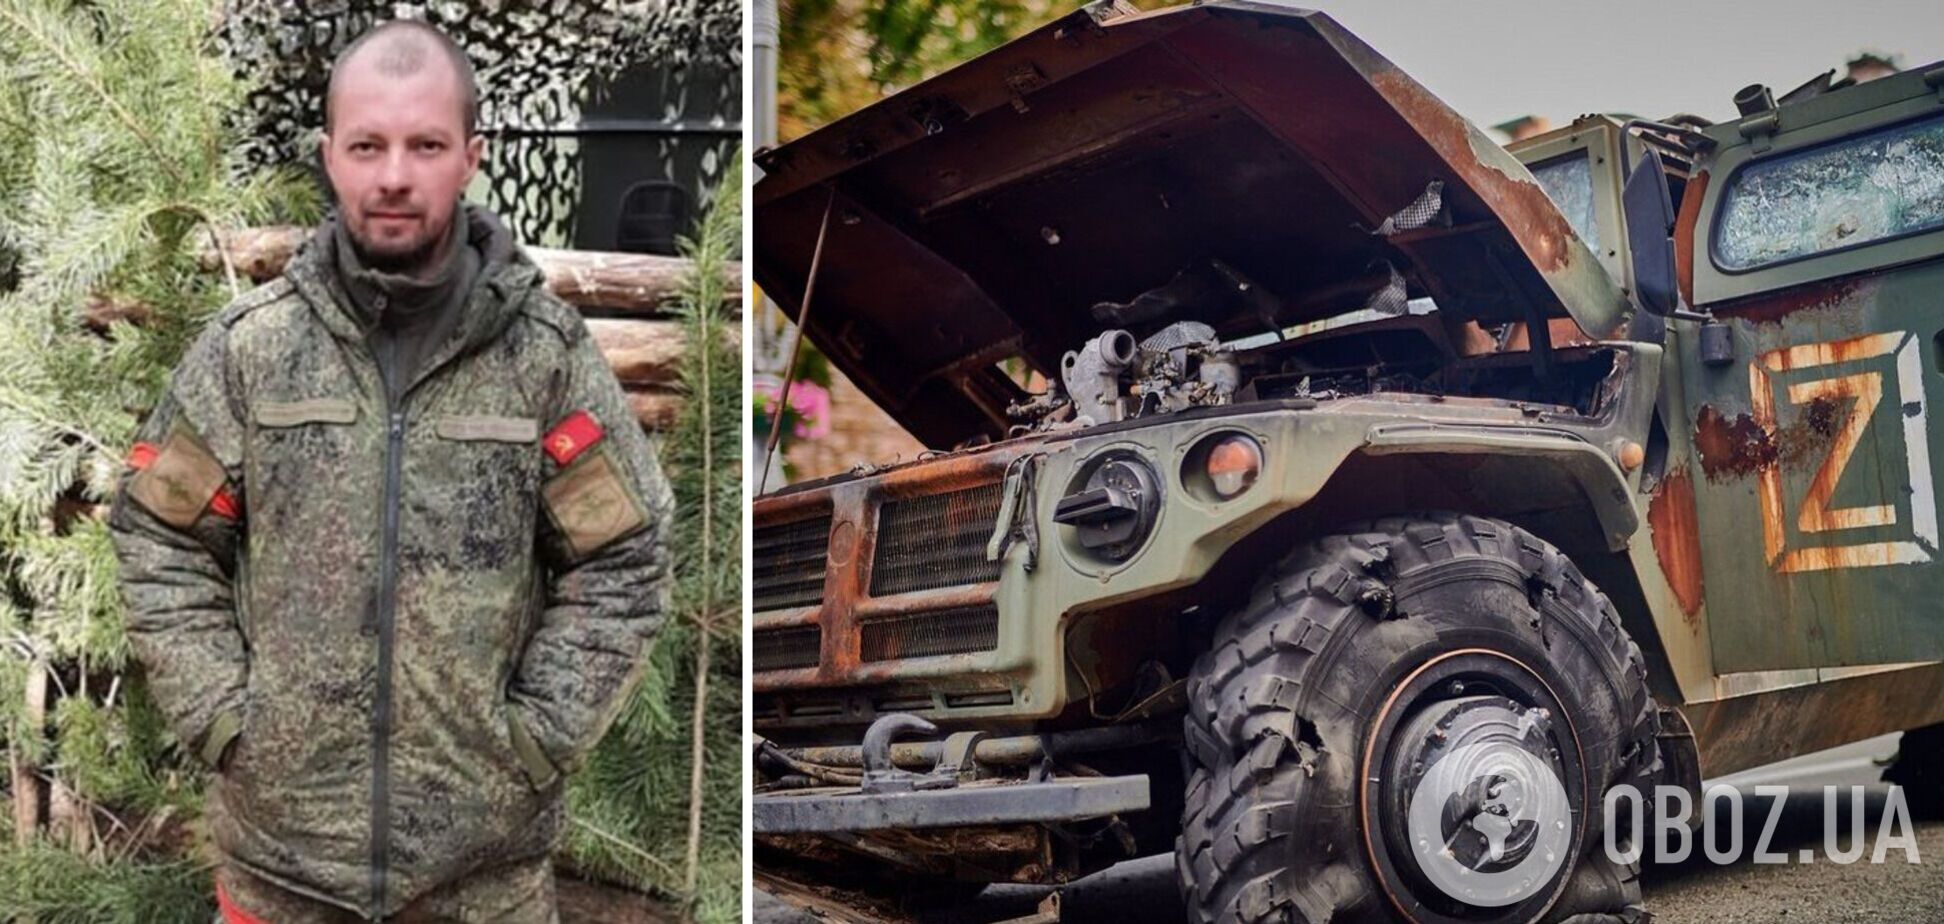 В Украине ликвидировали начальника тыла реактивной артиллерийской бригады РФ: был родом из Вольска. Фото